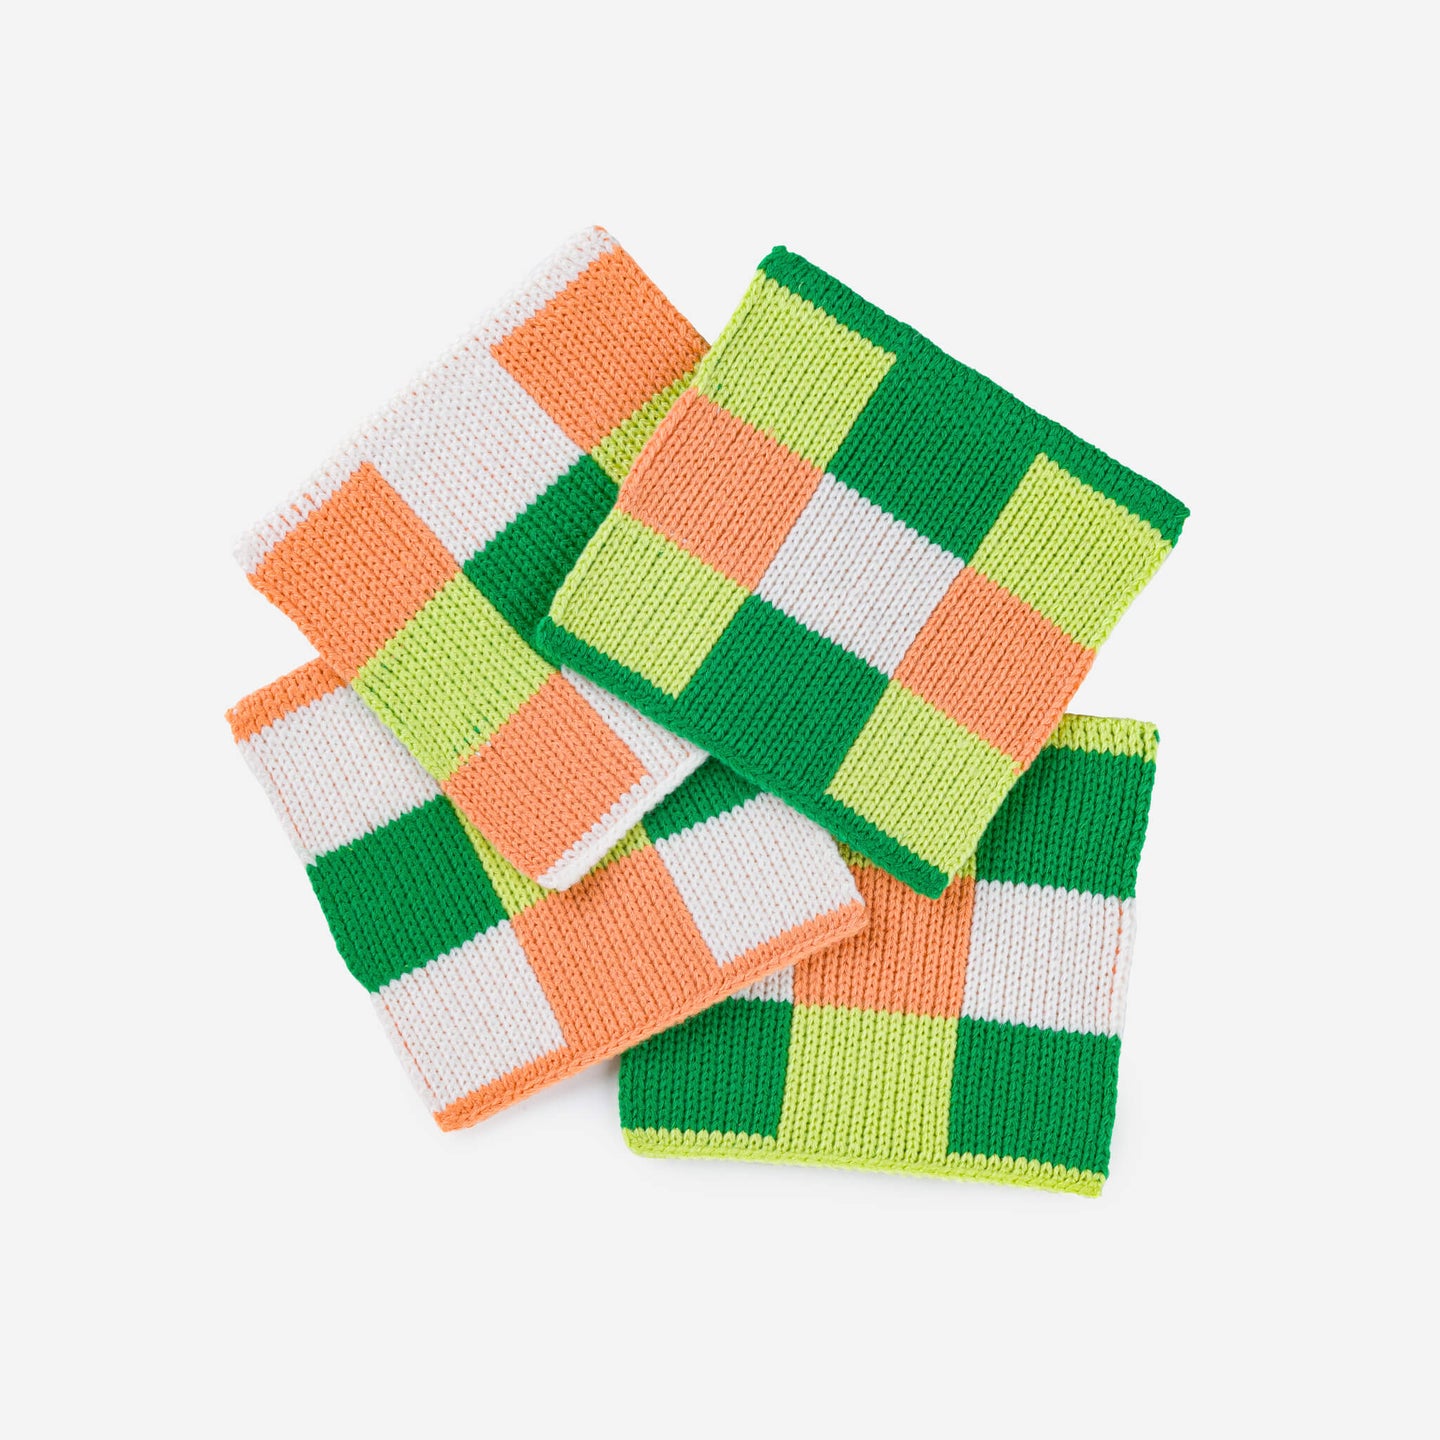 Square Square Soft Fabric Knit Coasters Non Scratch